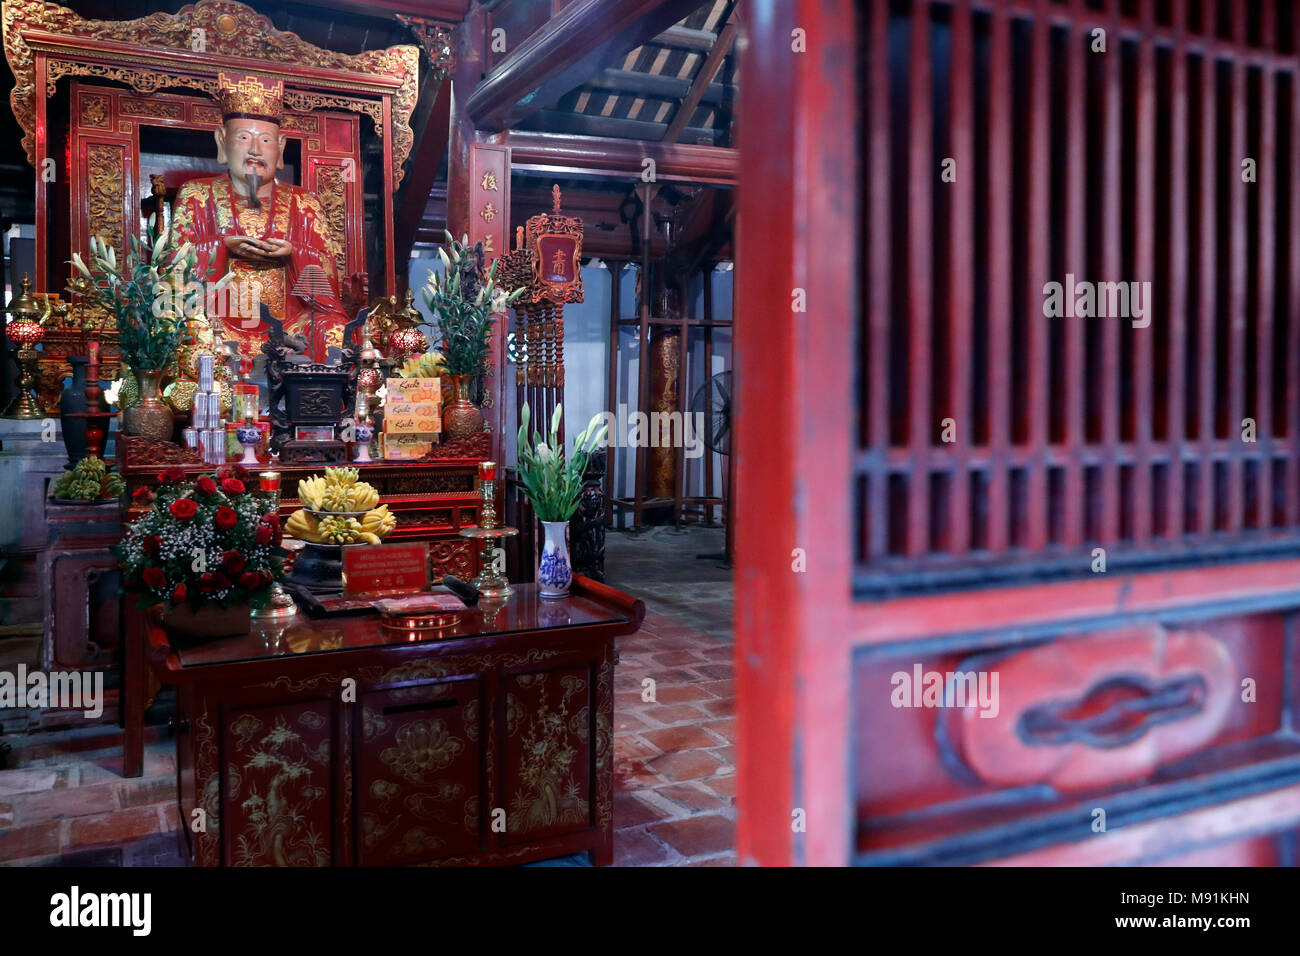 Temple of Literature.  Altar dedicated to Confucius. Hanoi. Vietnam. Stock Photo